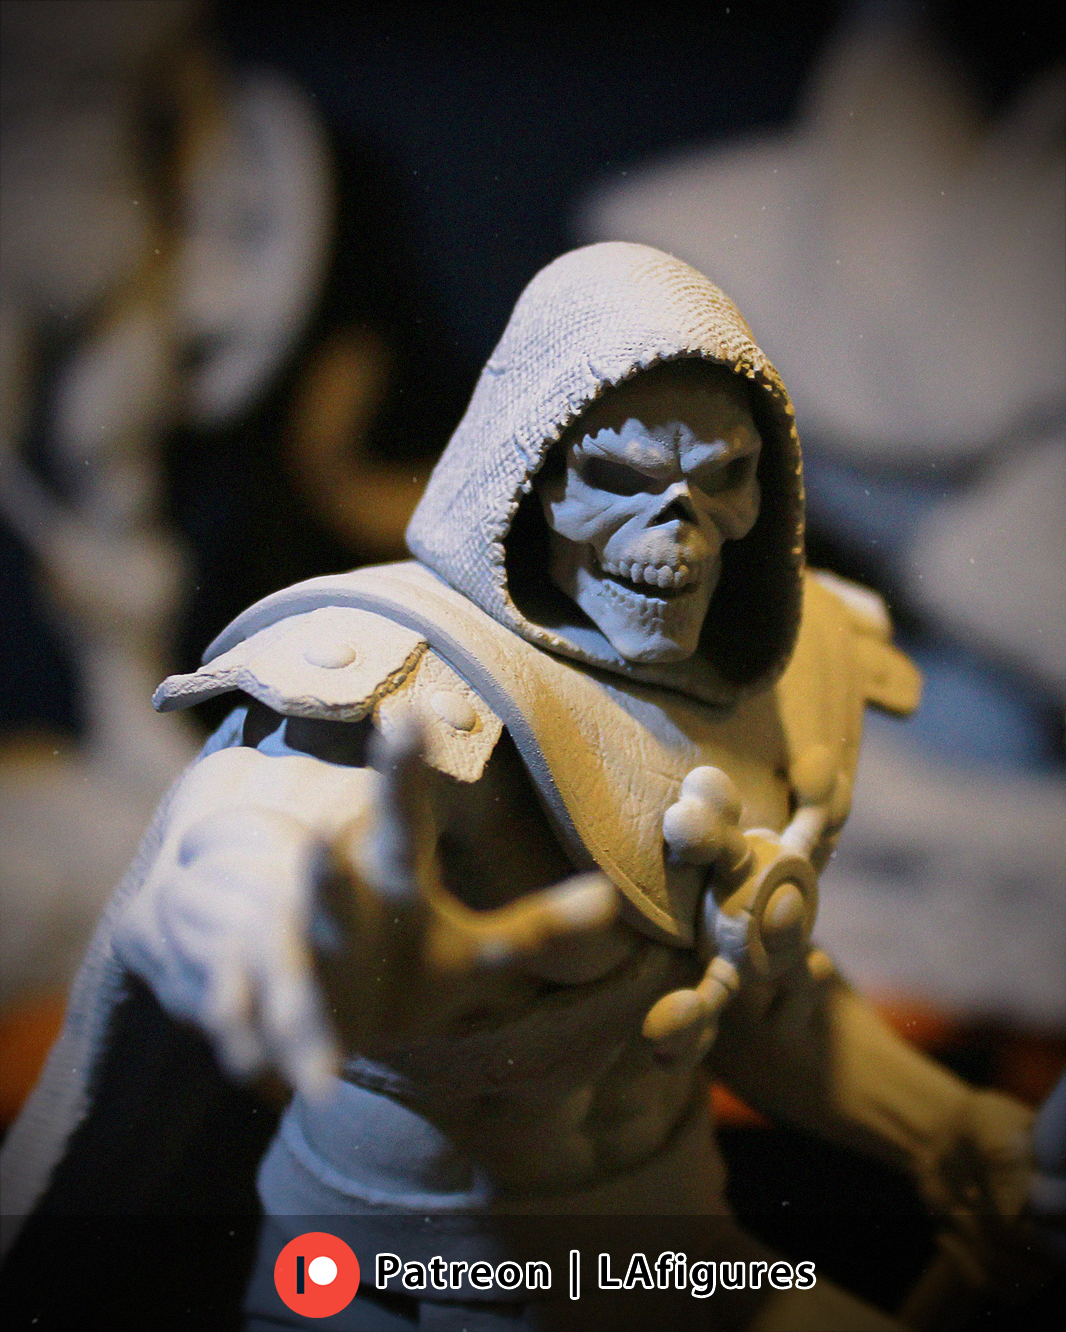 Skeletor (He-Man) Statue - Fan Art 12/10/8/6 scale - 3D Print